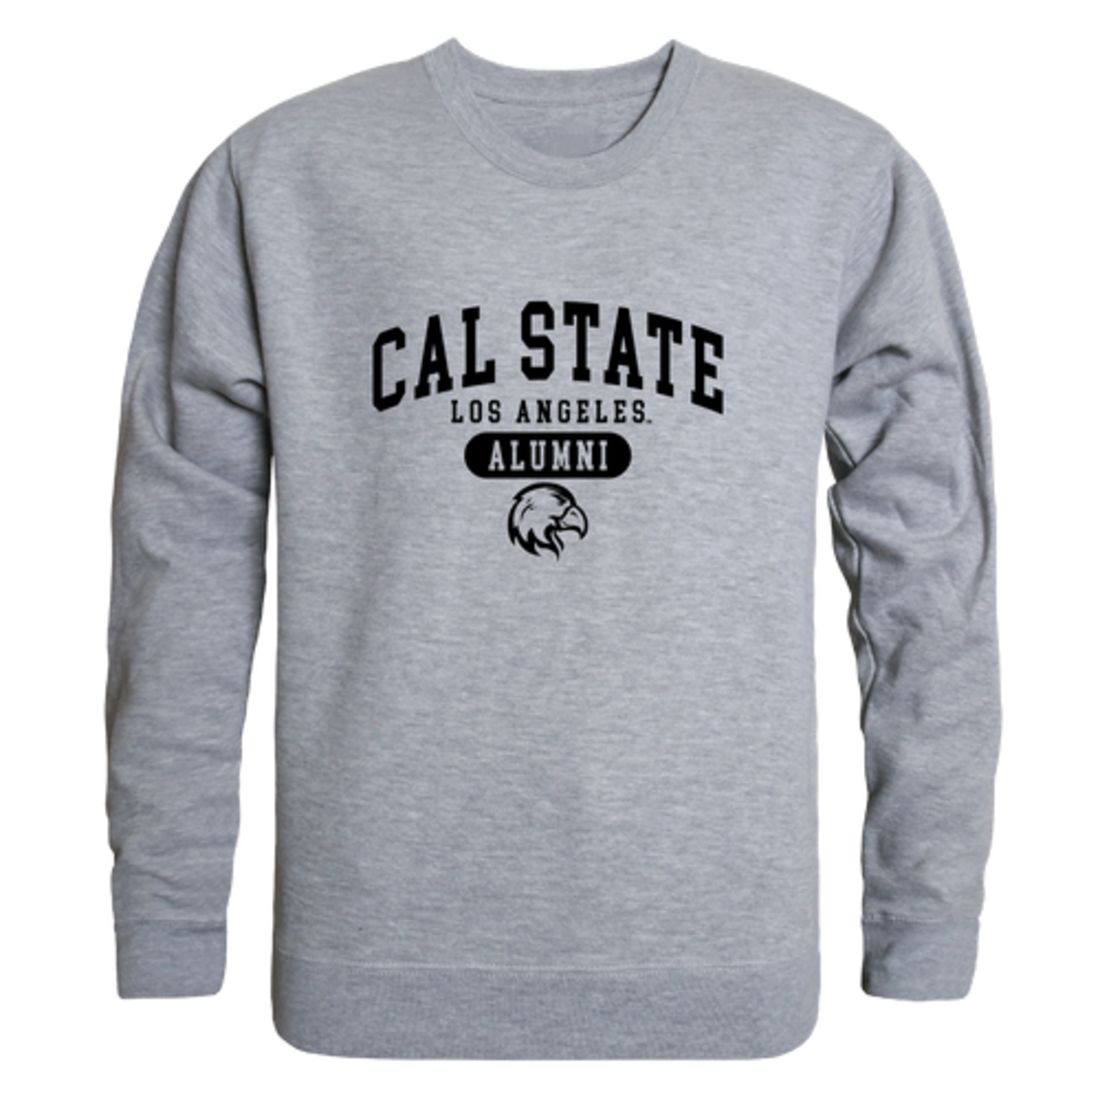 California State University Los Angeles Golden Eagles Alumni Fleece Crewneck Pullover Sweatshirt Black-Campus-Wardrobe